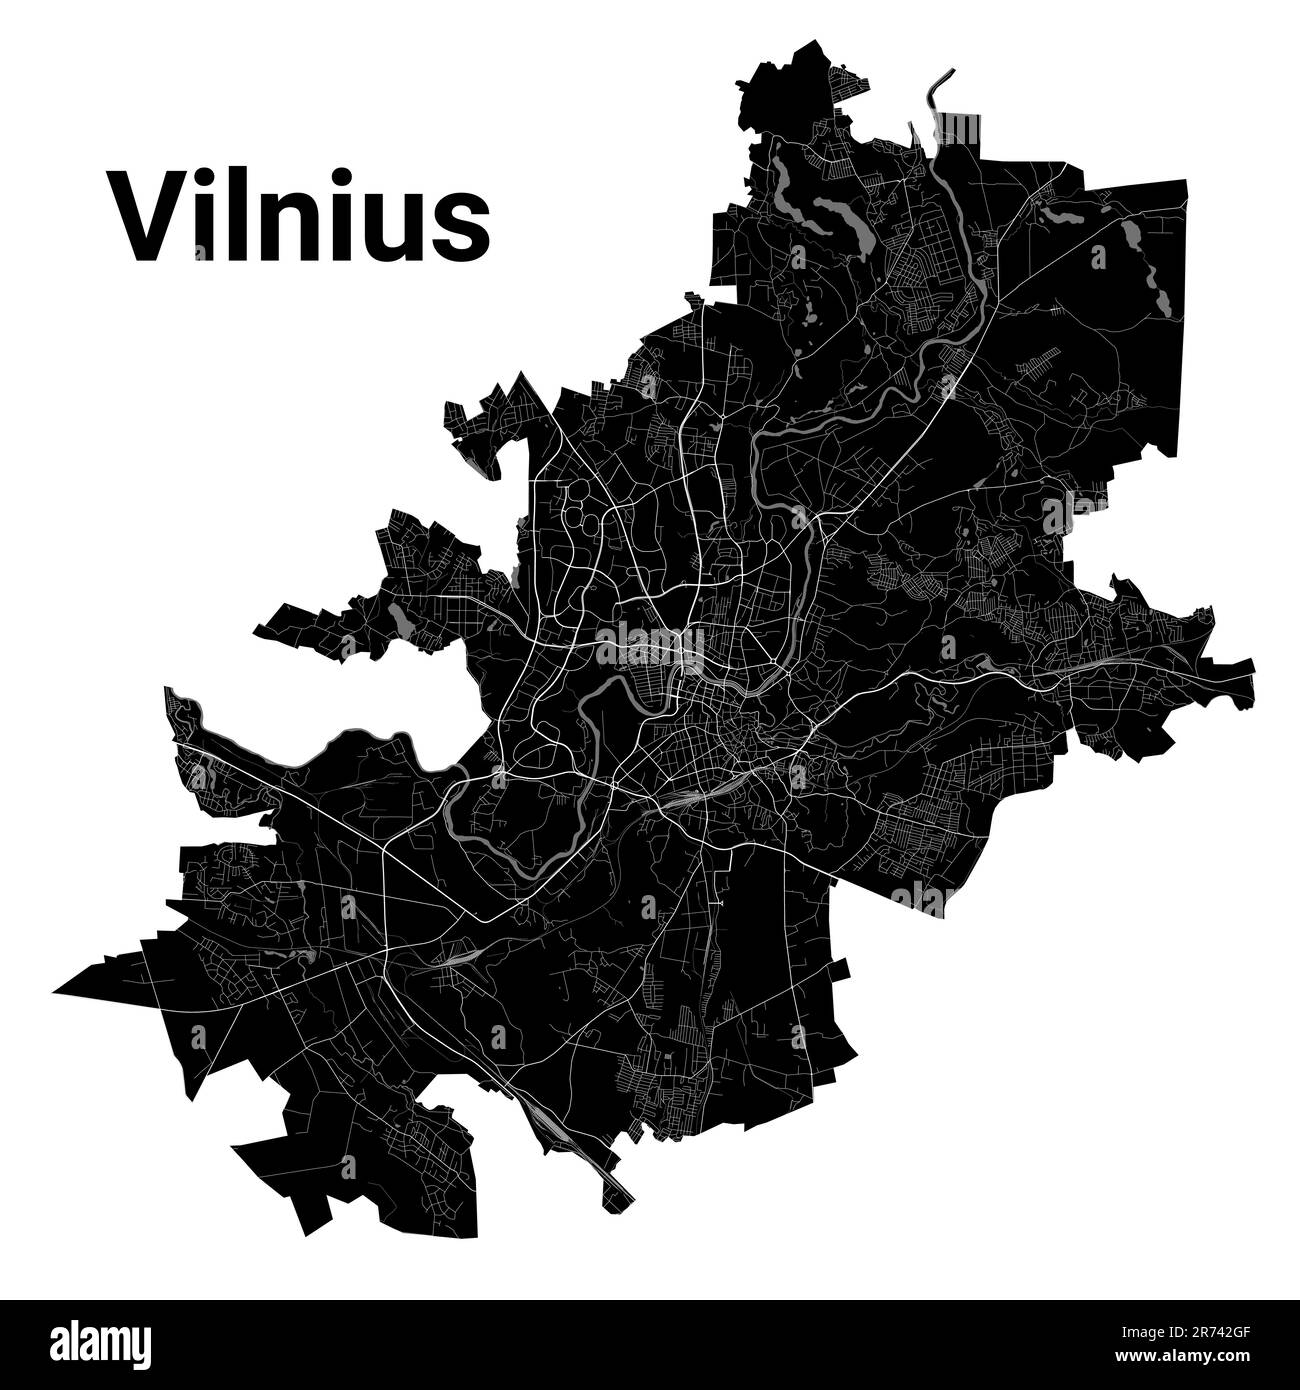 Stadtplan Vilnius, detaillierte Verwaltungsgrenzen Stadtplan, Litauen. Fluss Neris und Vilnia, Straßen und Eisenbahn. Vektor-Illustration Stock Vektor